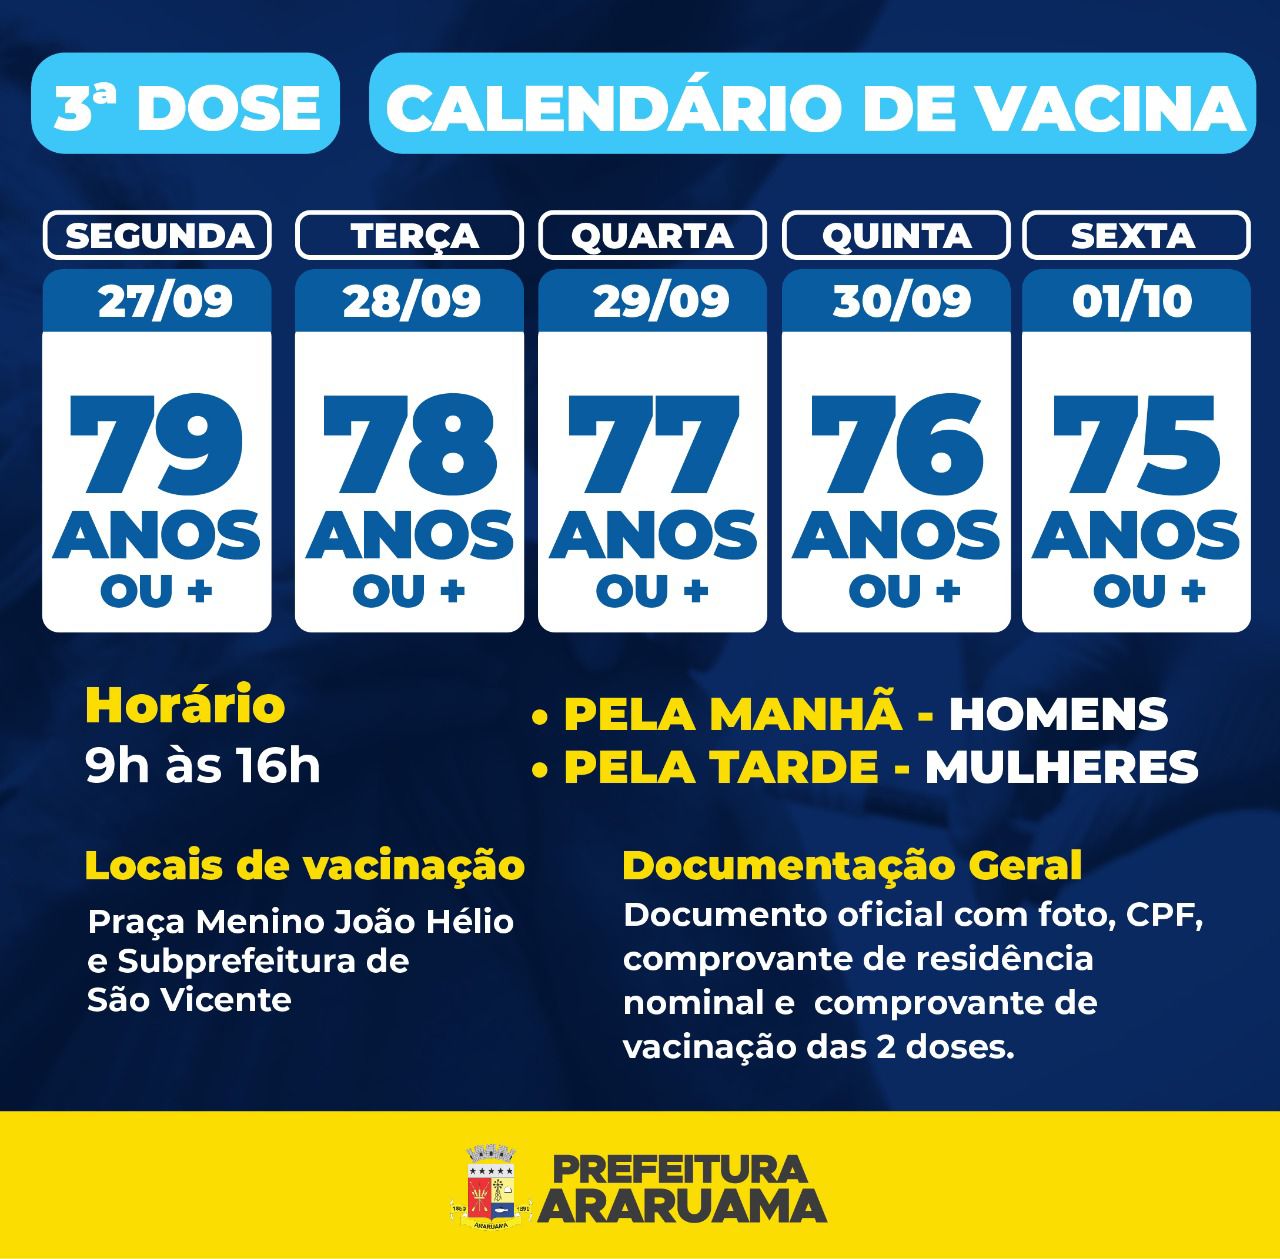 Calendário de Vacinação da terceira dose para idosos a partir de 75 anos  (é preciso ter tomado a segunda dose há 6 meses)